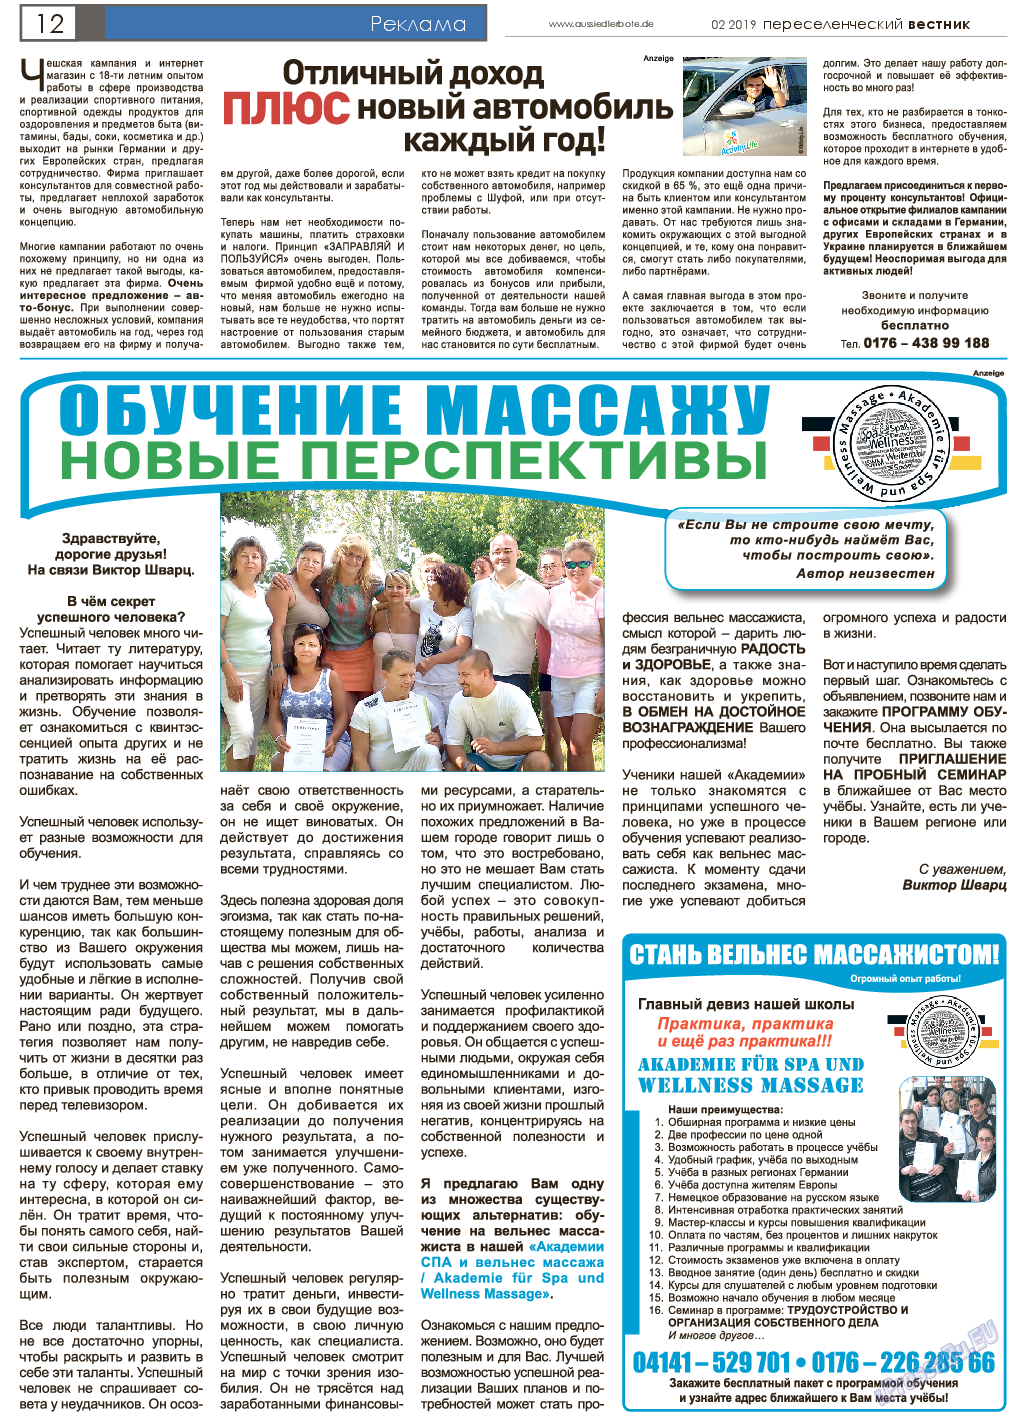 Переселенческий вестник, газета. 2019 №2 стр.12